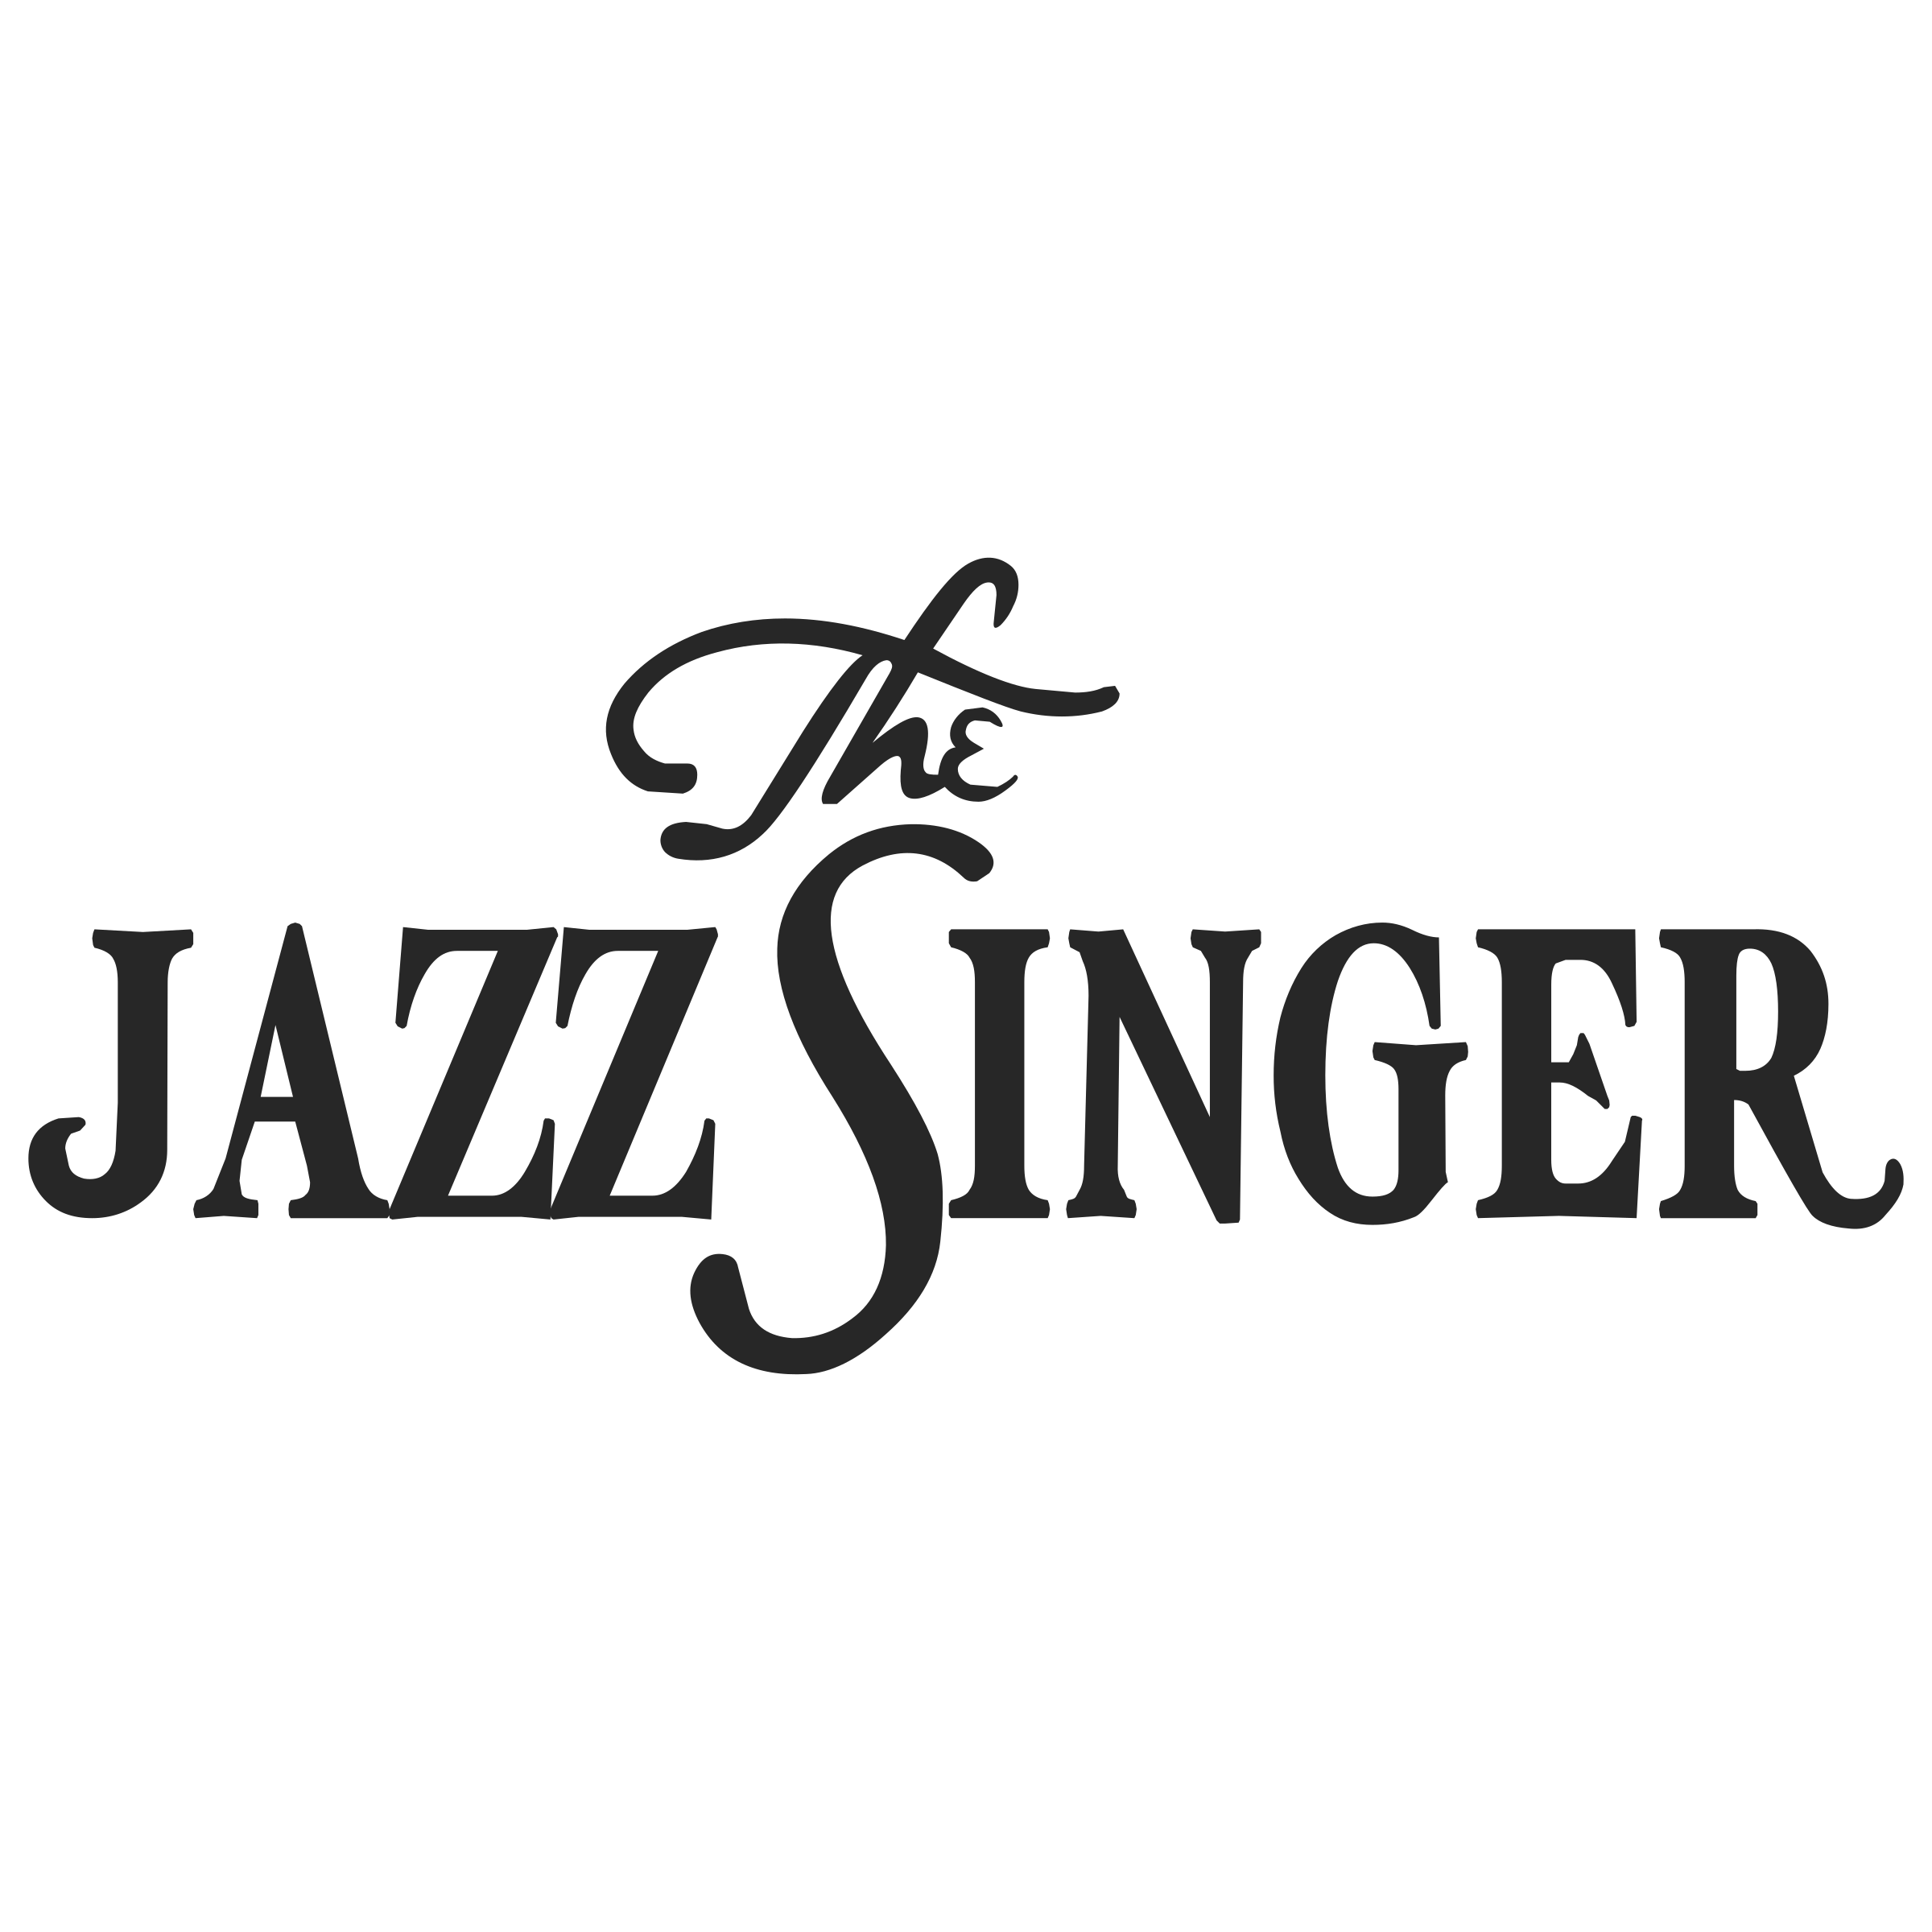 Jazz Music Logo PNG Pic